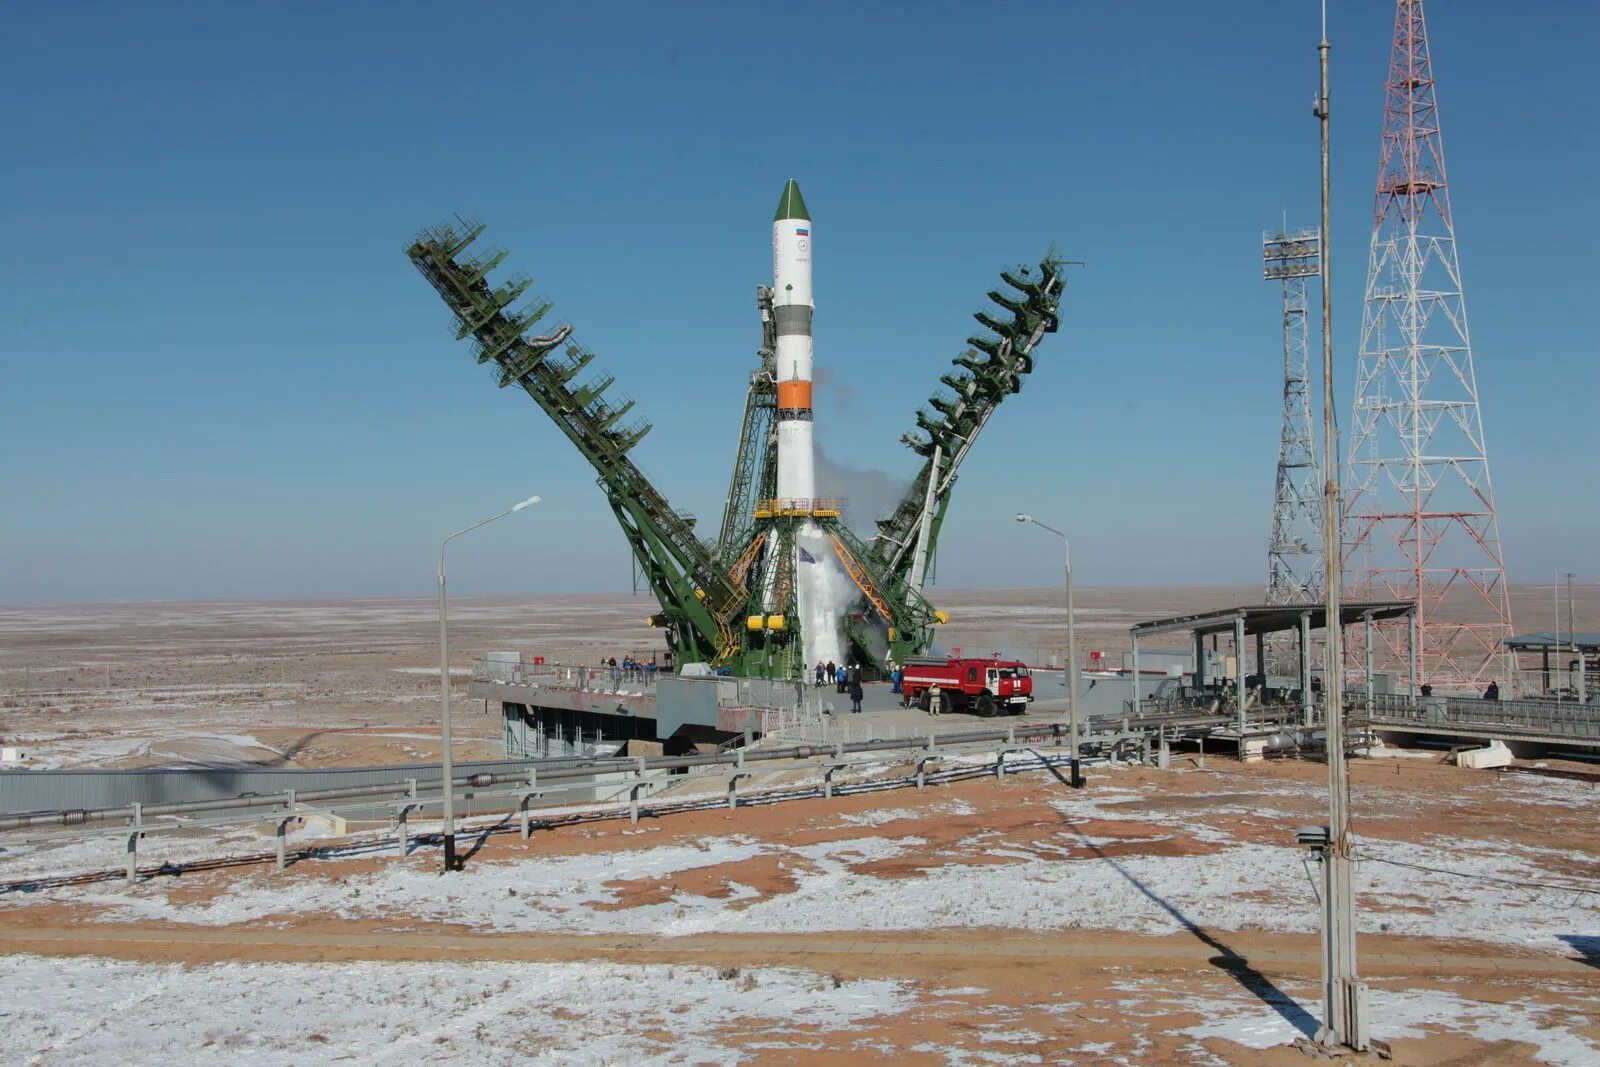 Б м восток. Казахстан ракетная станция. Космодром «Байконур» (Казахстан). Старт с Байконура. Р-7 стартовый комплекс.